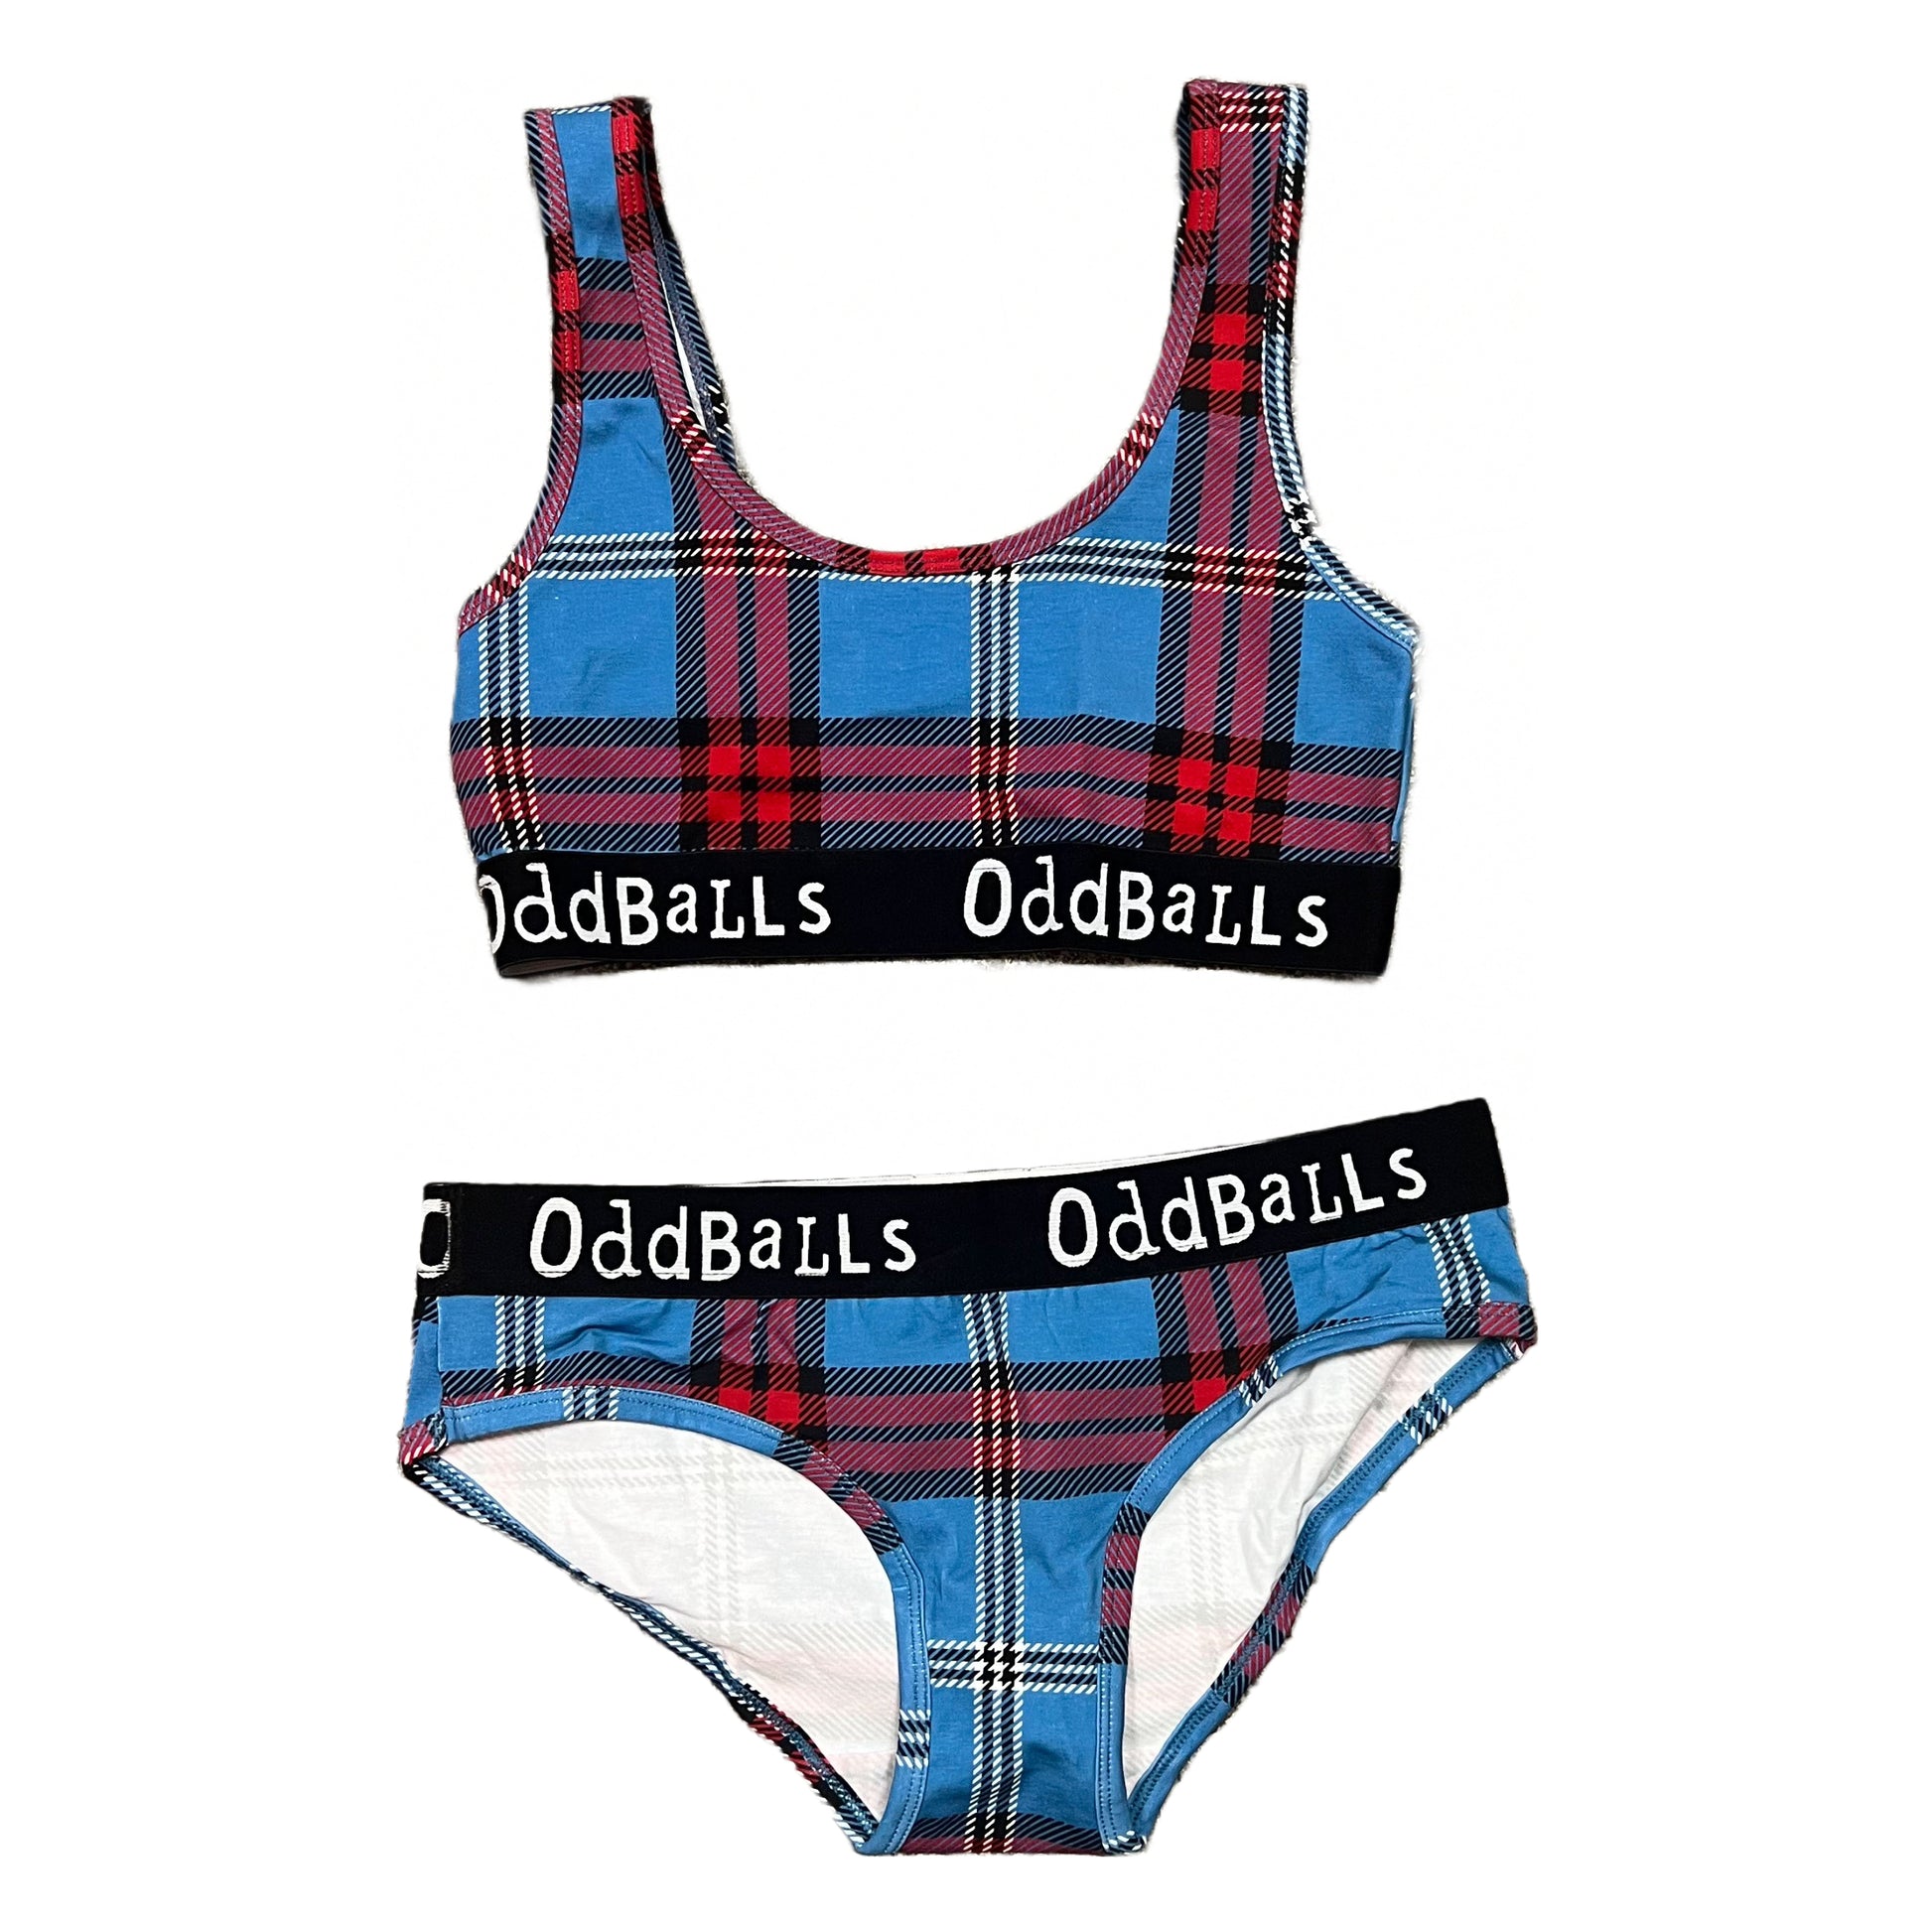 OddBalls Ladies Briefs